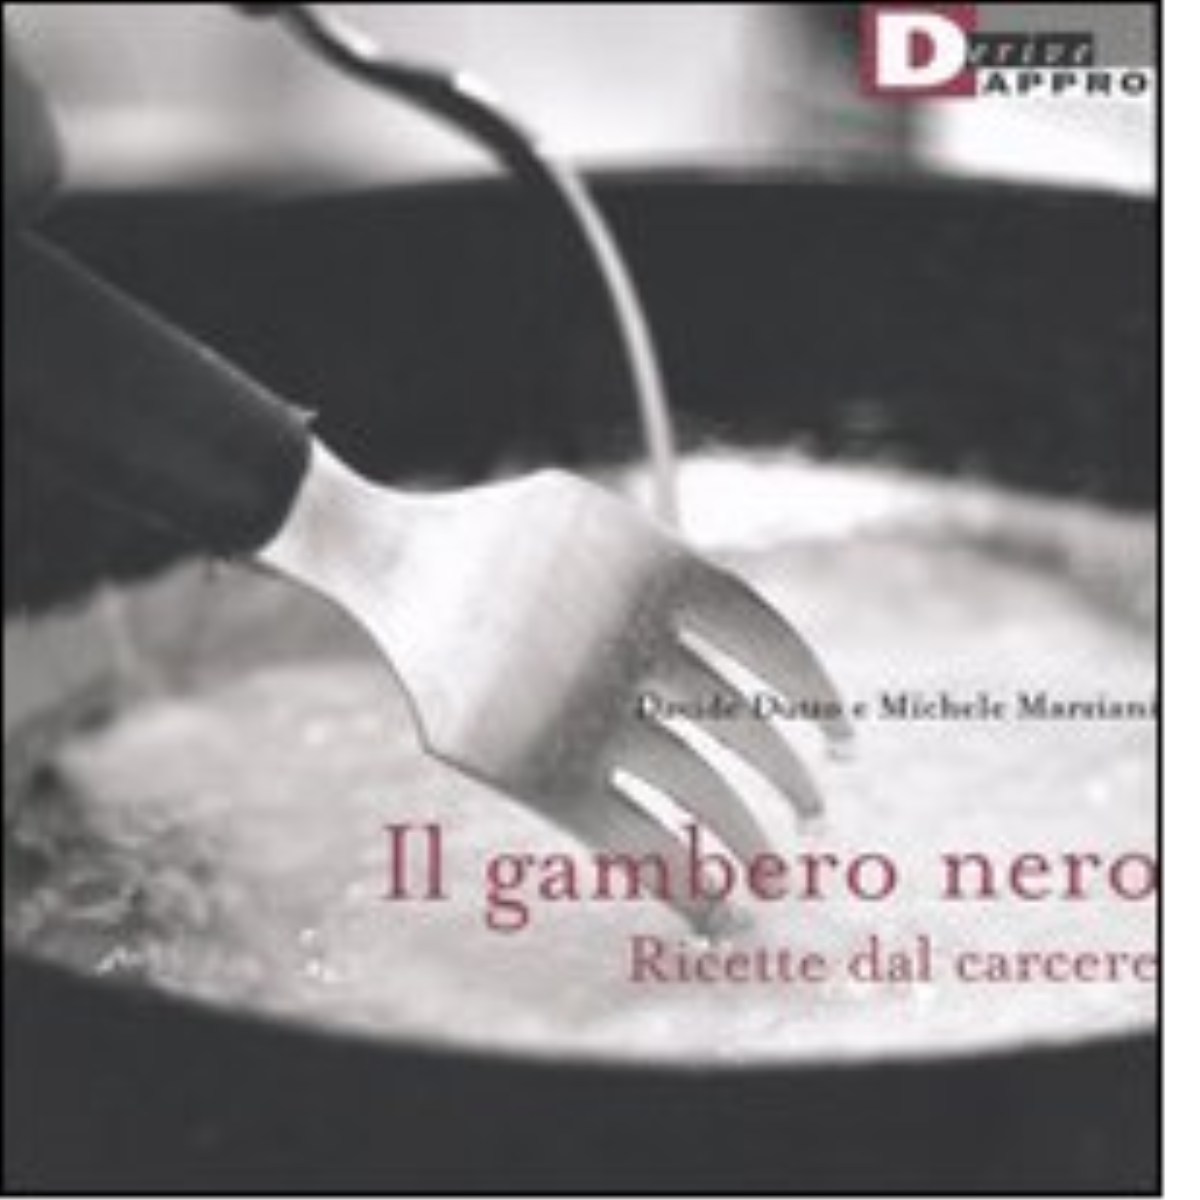 IL GAMBERO NERO. di DAVIDE DUTTO, MICHELE MARZIANI - DeriveApprodi editore, 2005